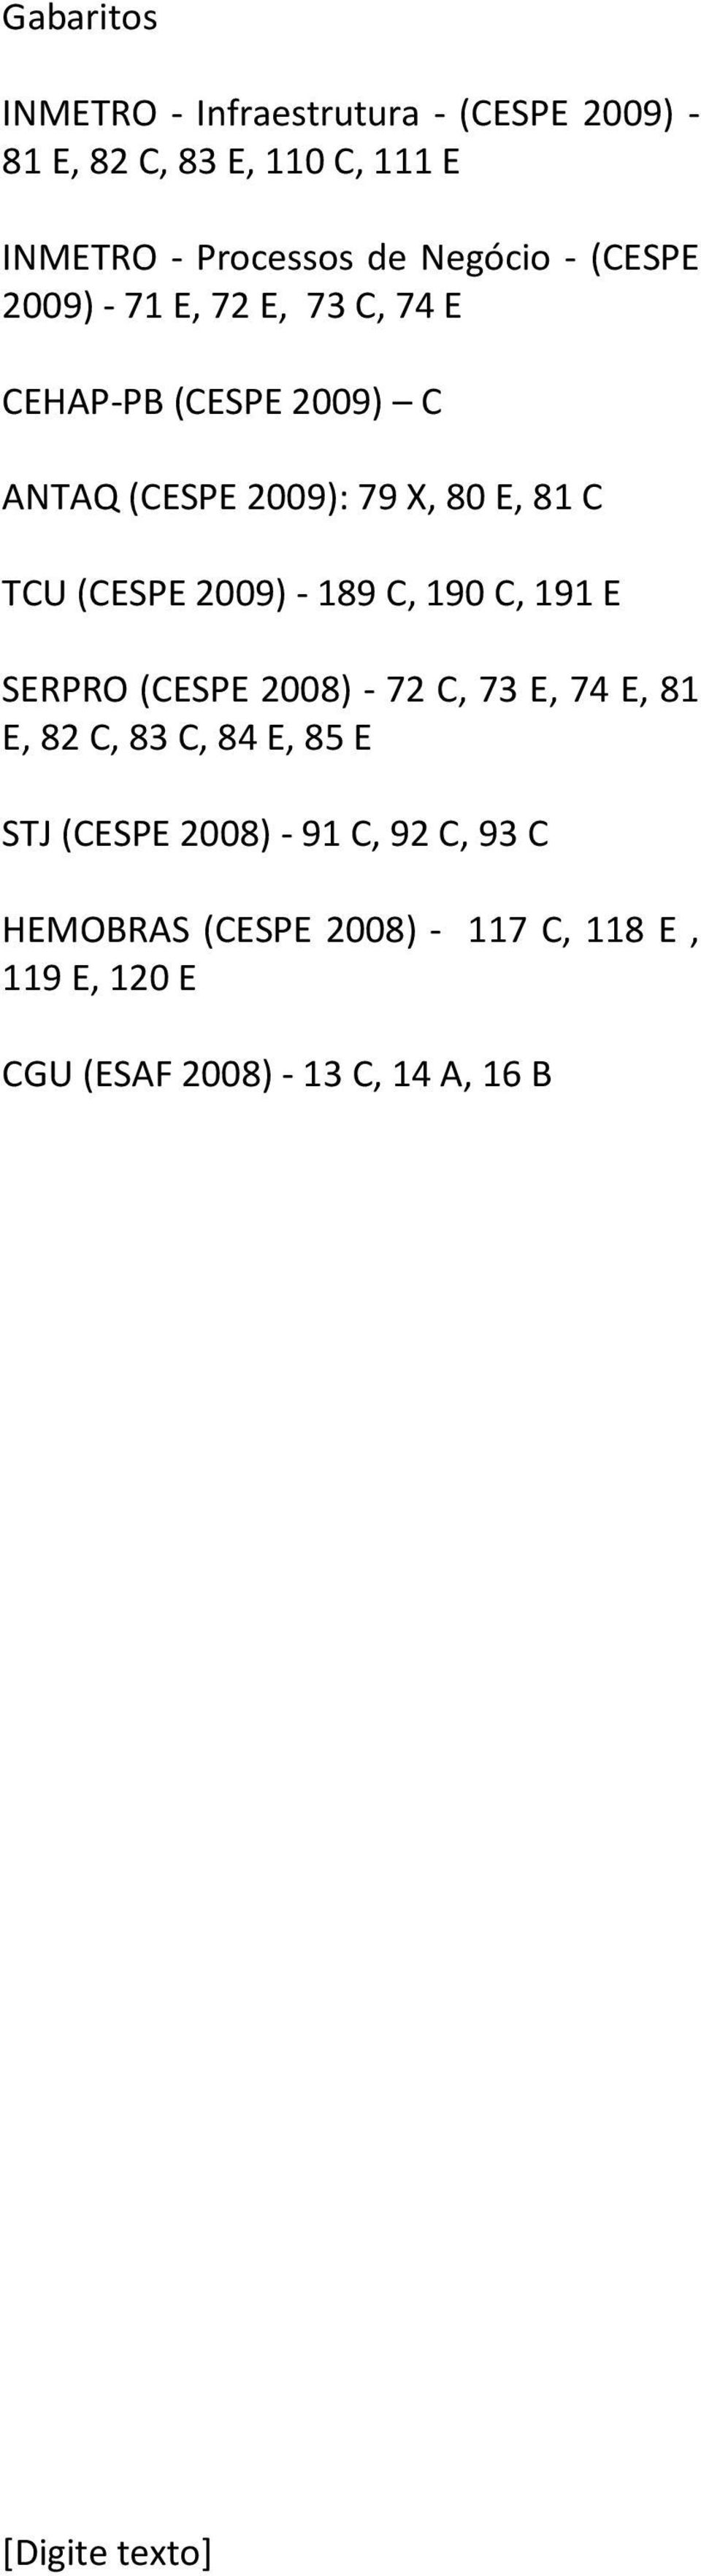 TCU (CESPE 2009) - 189 C, 190 C, 191 E SERPRO (CESPE 2008) - 72 C, 73 E, 74 E, 81 E, 82 C, 83 C, 84 E, 85 E